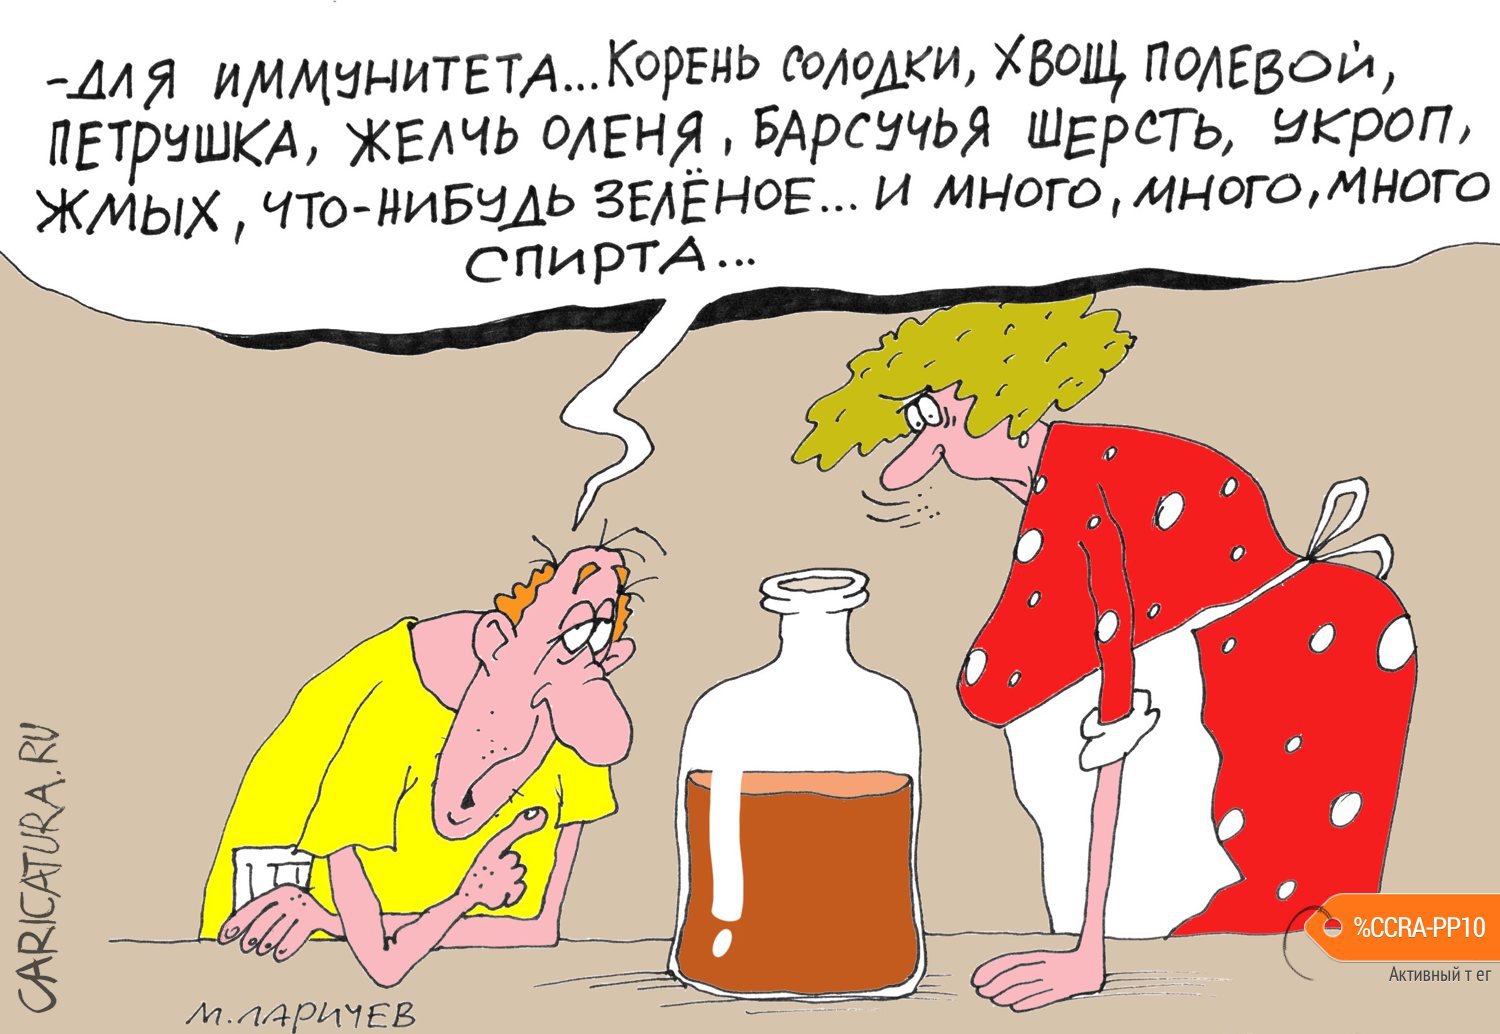 Карикатура "Жмых", Михаил Ларичев